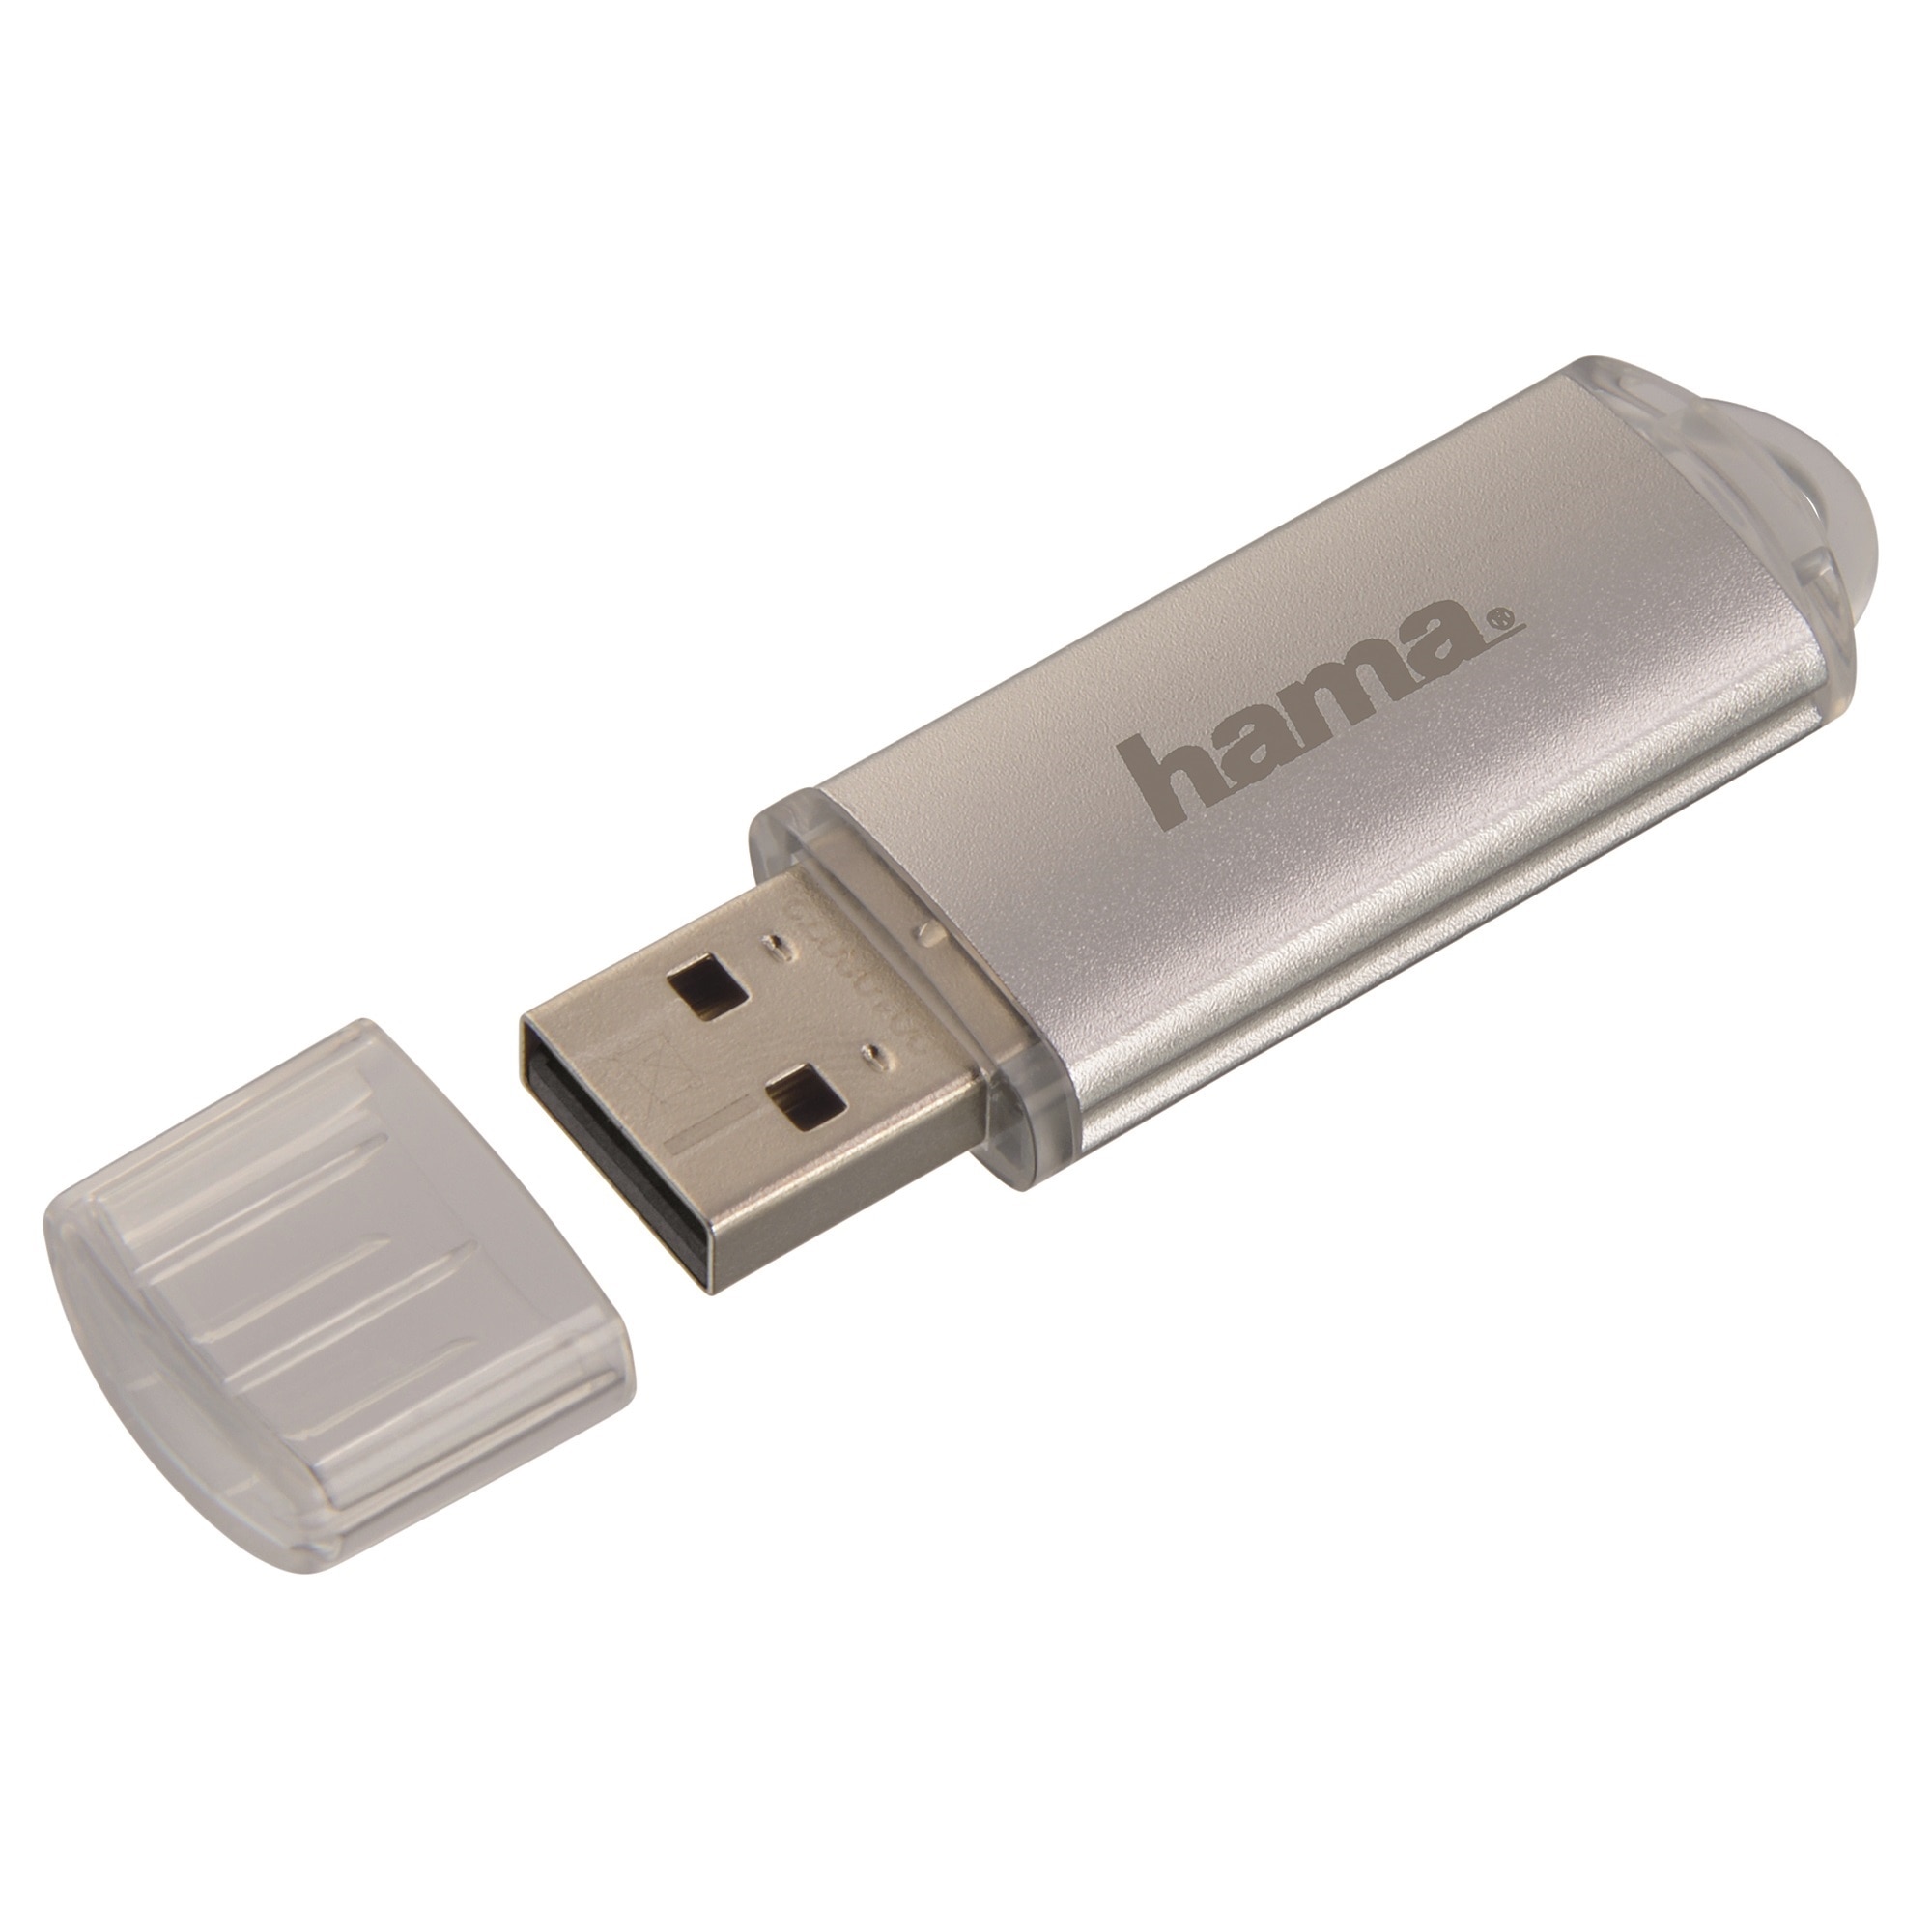 Usb флеш 128 гб. Флешка 128 ГБ. Hama 128gb. Флешка Hama 16 g. USB Stick.